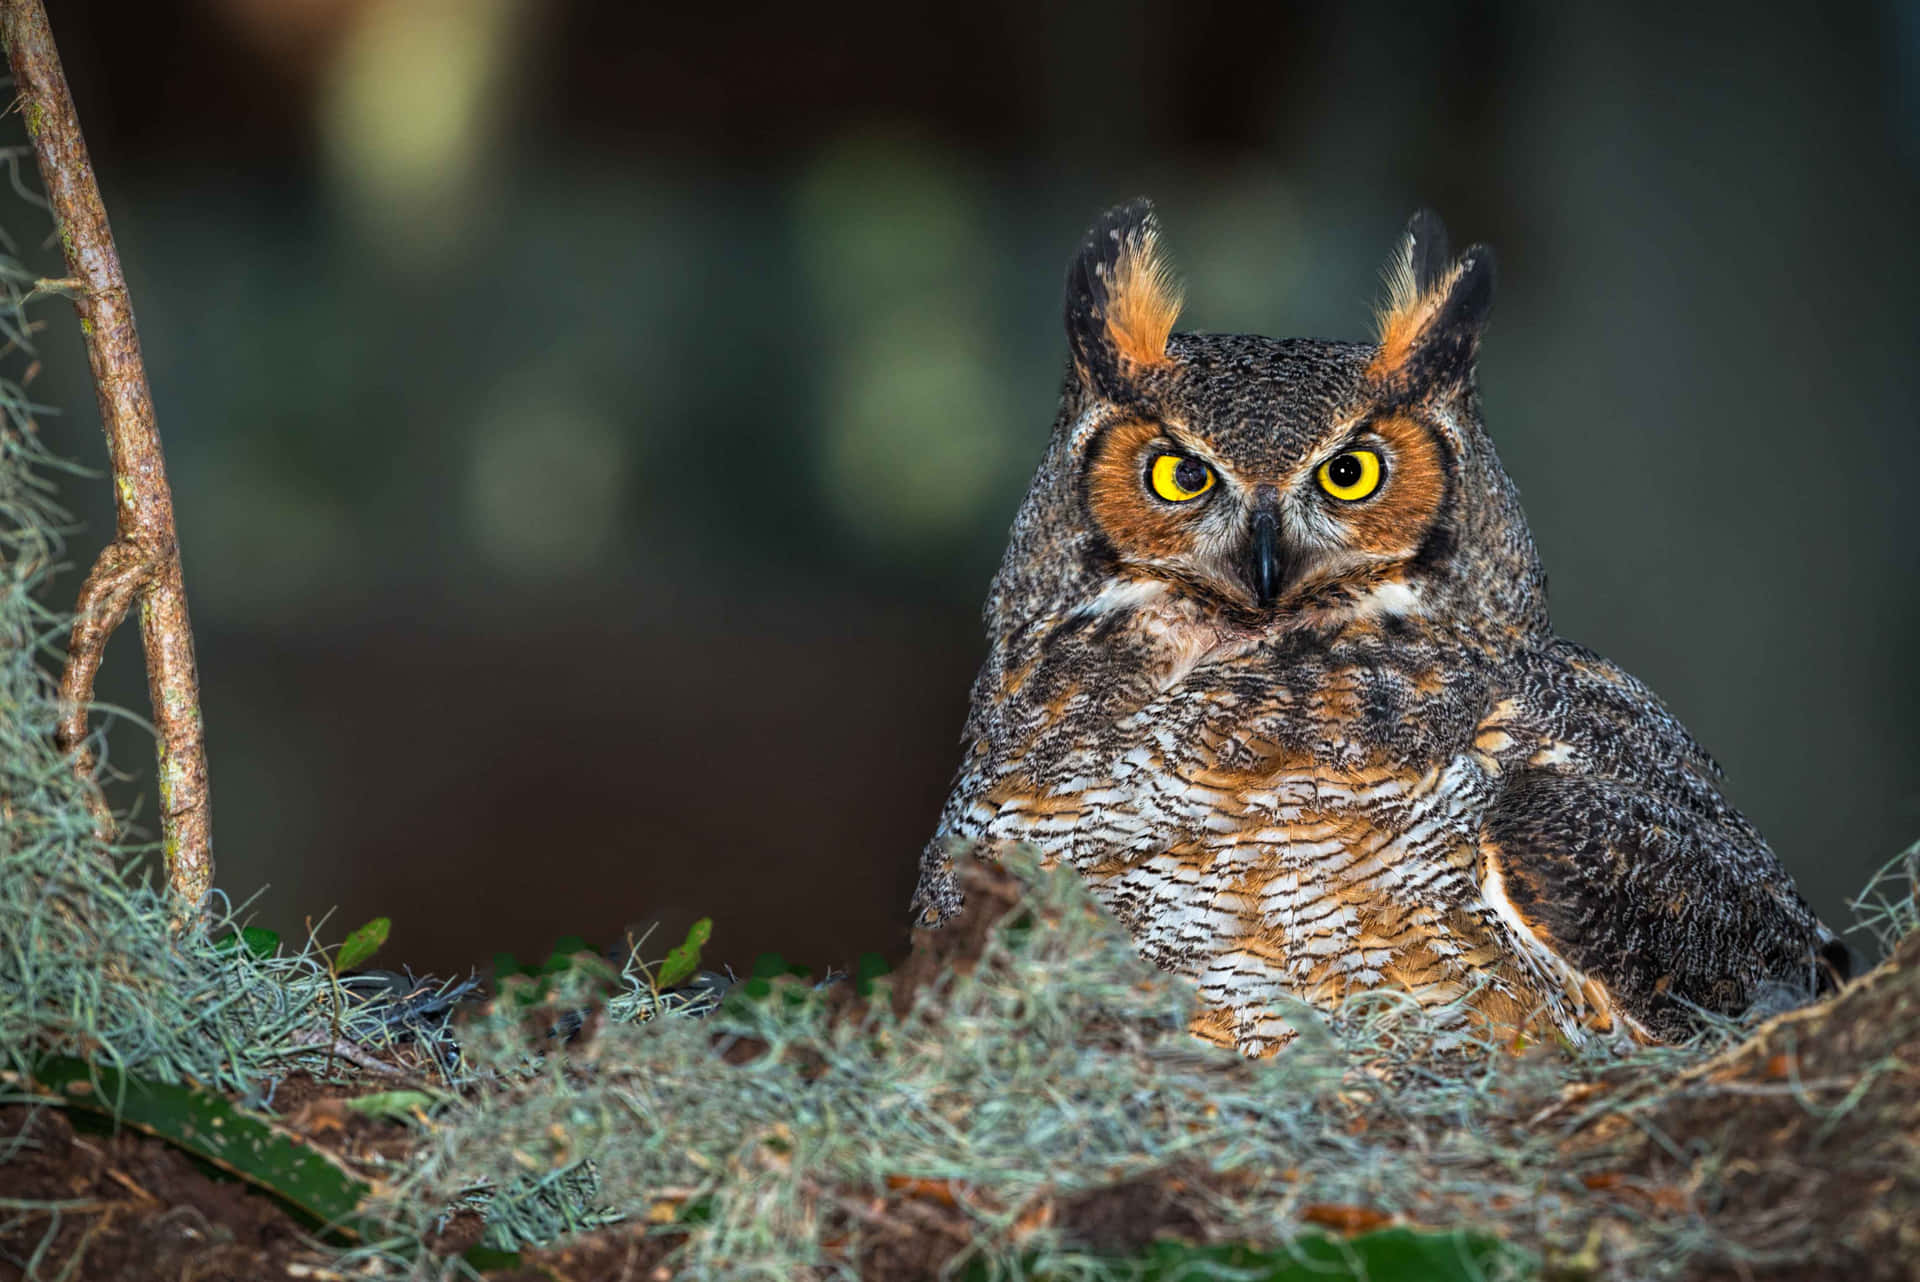 An Awe-Inspiring Visual of an Owl